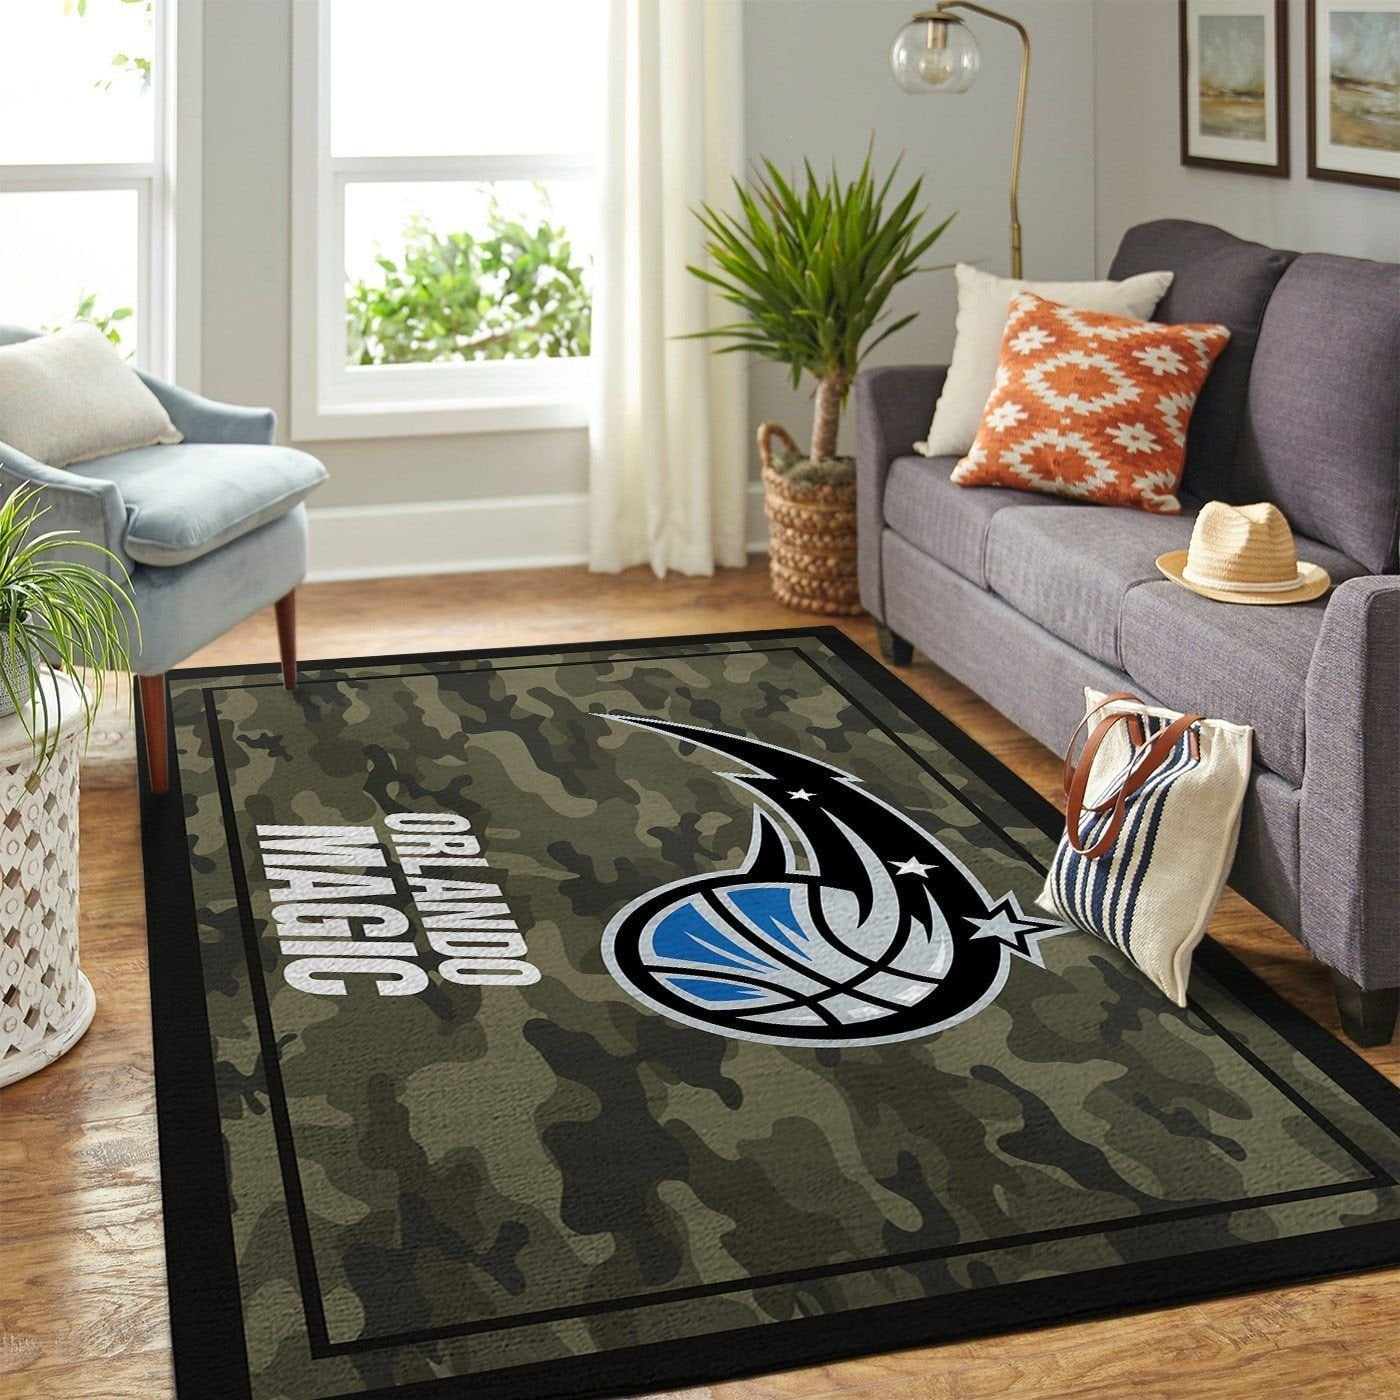 Orlando Magic Nba Team Logo Camo Style Nice Gift Home Decor Rectangle Area Rug - Indoor Outdoor Rugs